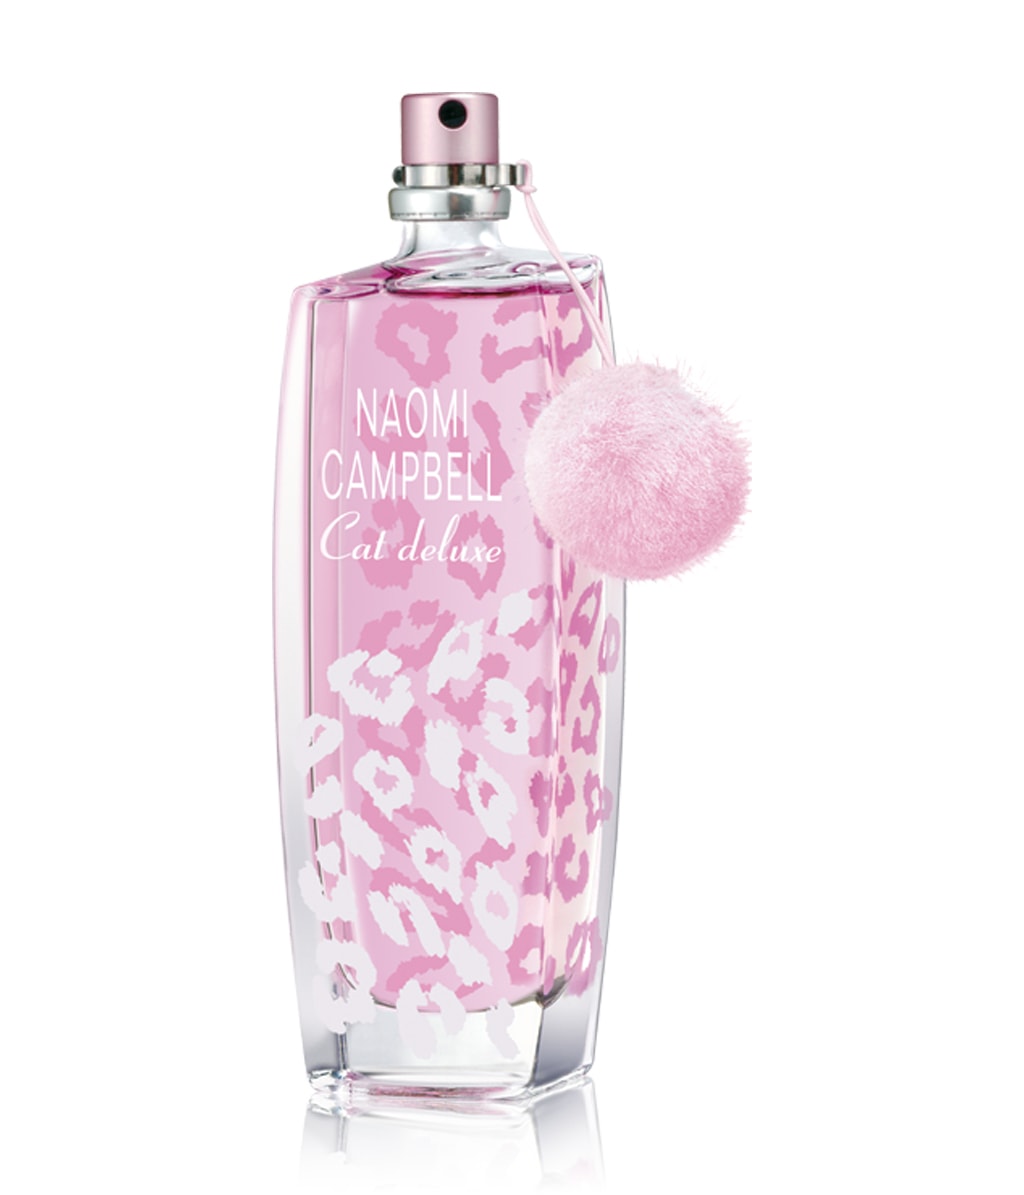 Naomi Campbell Cat Deluxe Parfum bestellen | flaconi